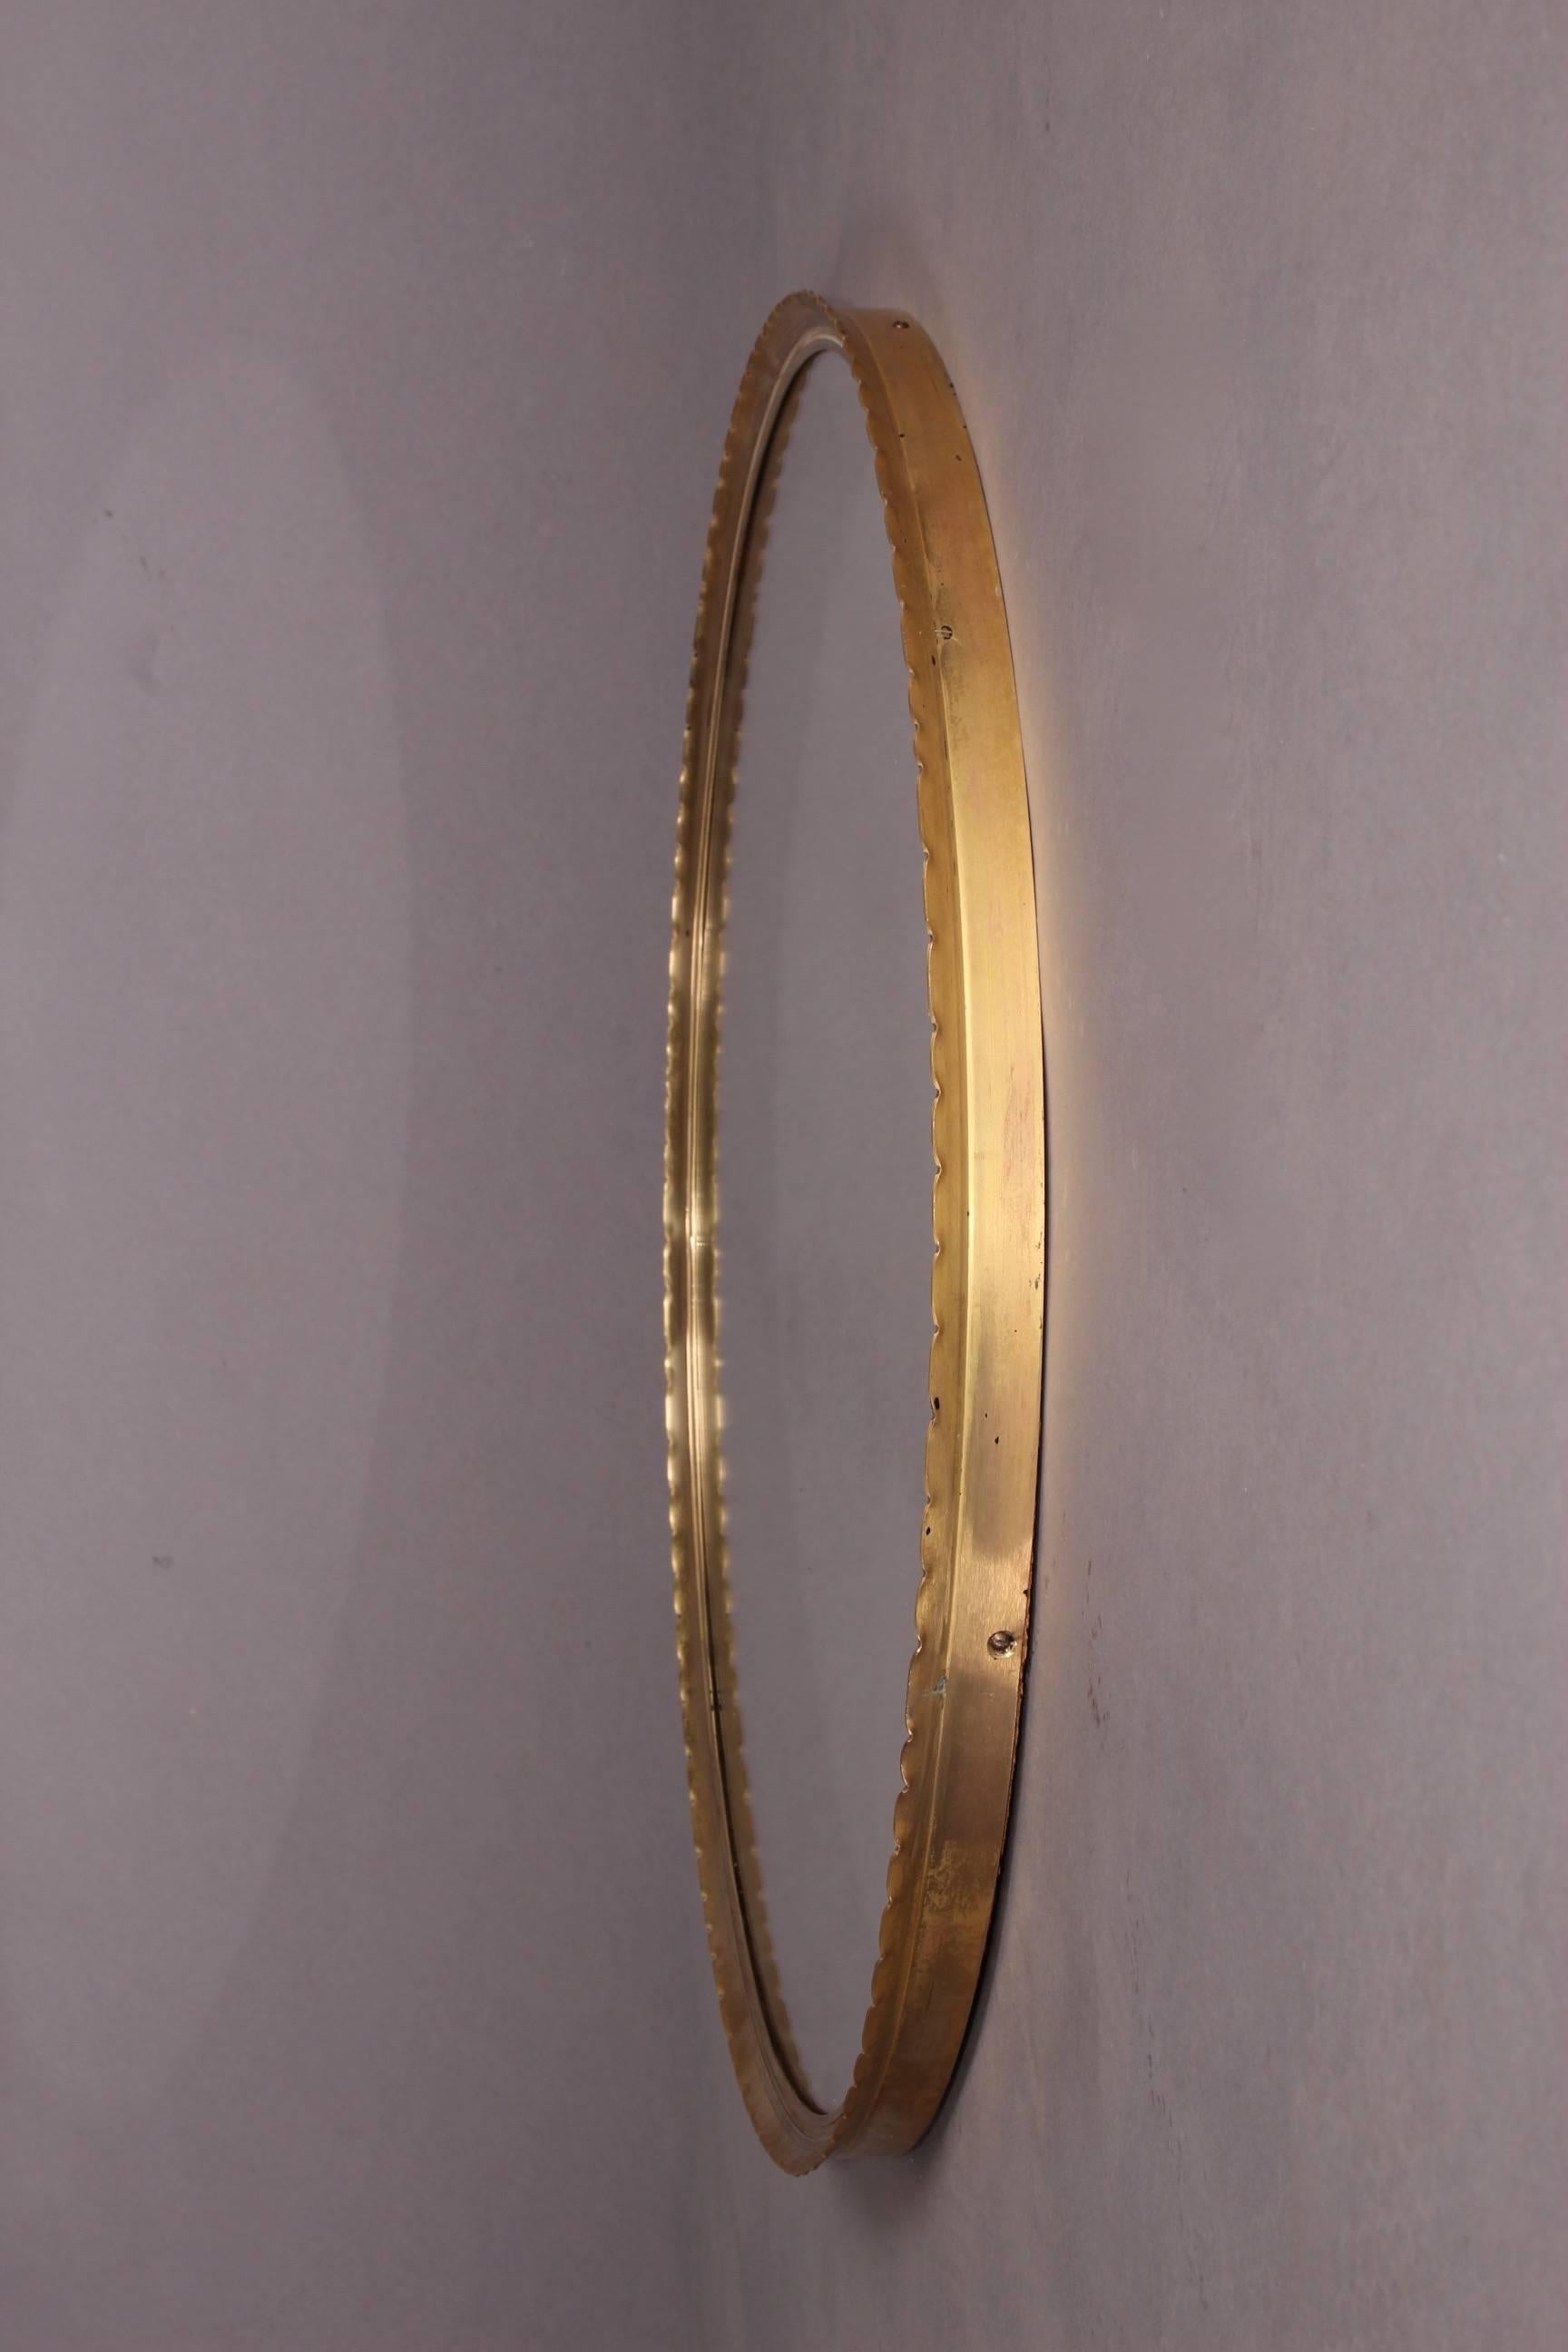 European Round Brass Josef Frank Style Mirror